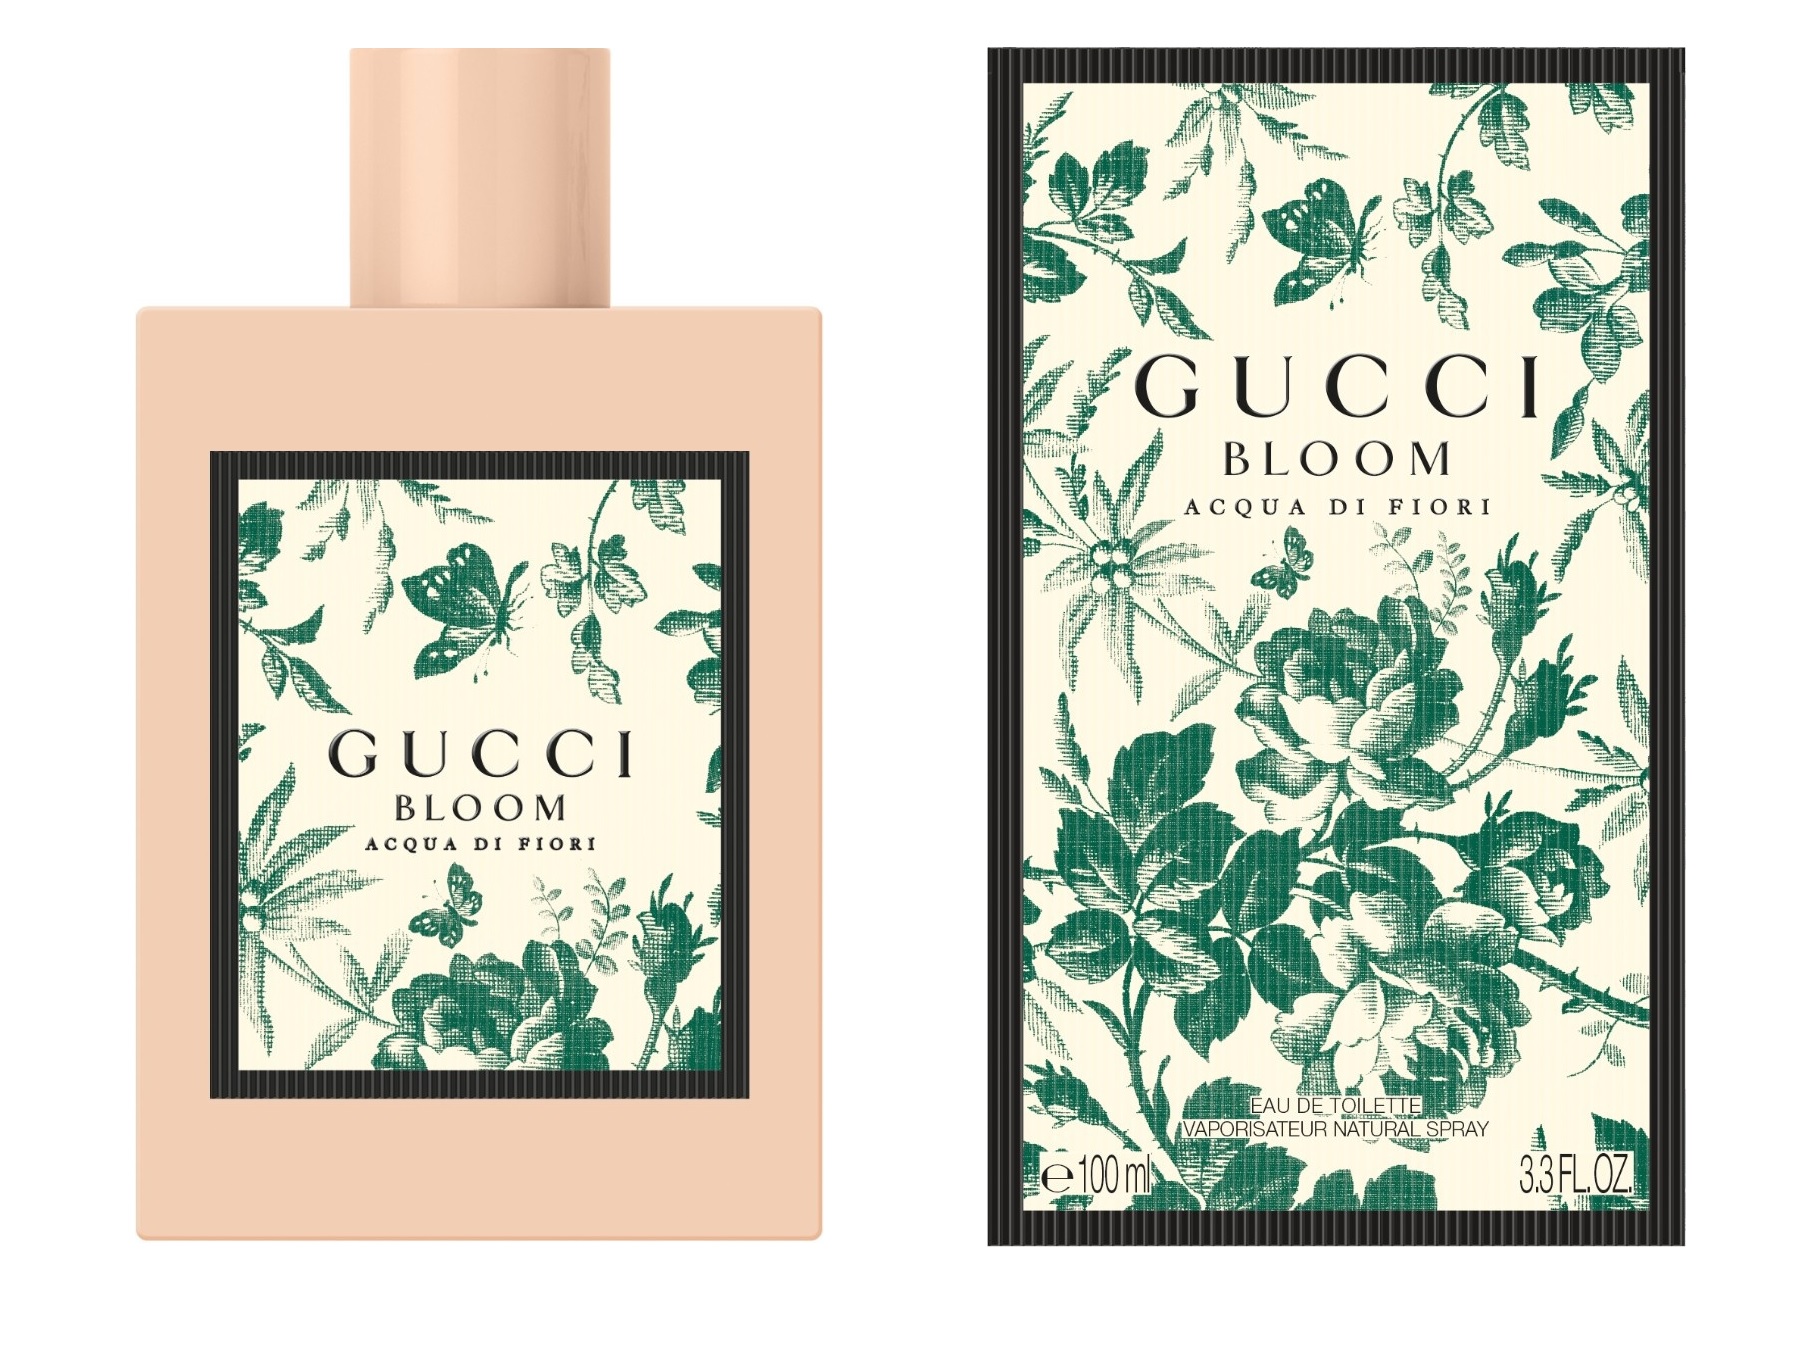 NEW: Gucci - Gucci Bloom Acqua di Fiori!